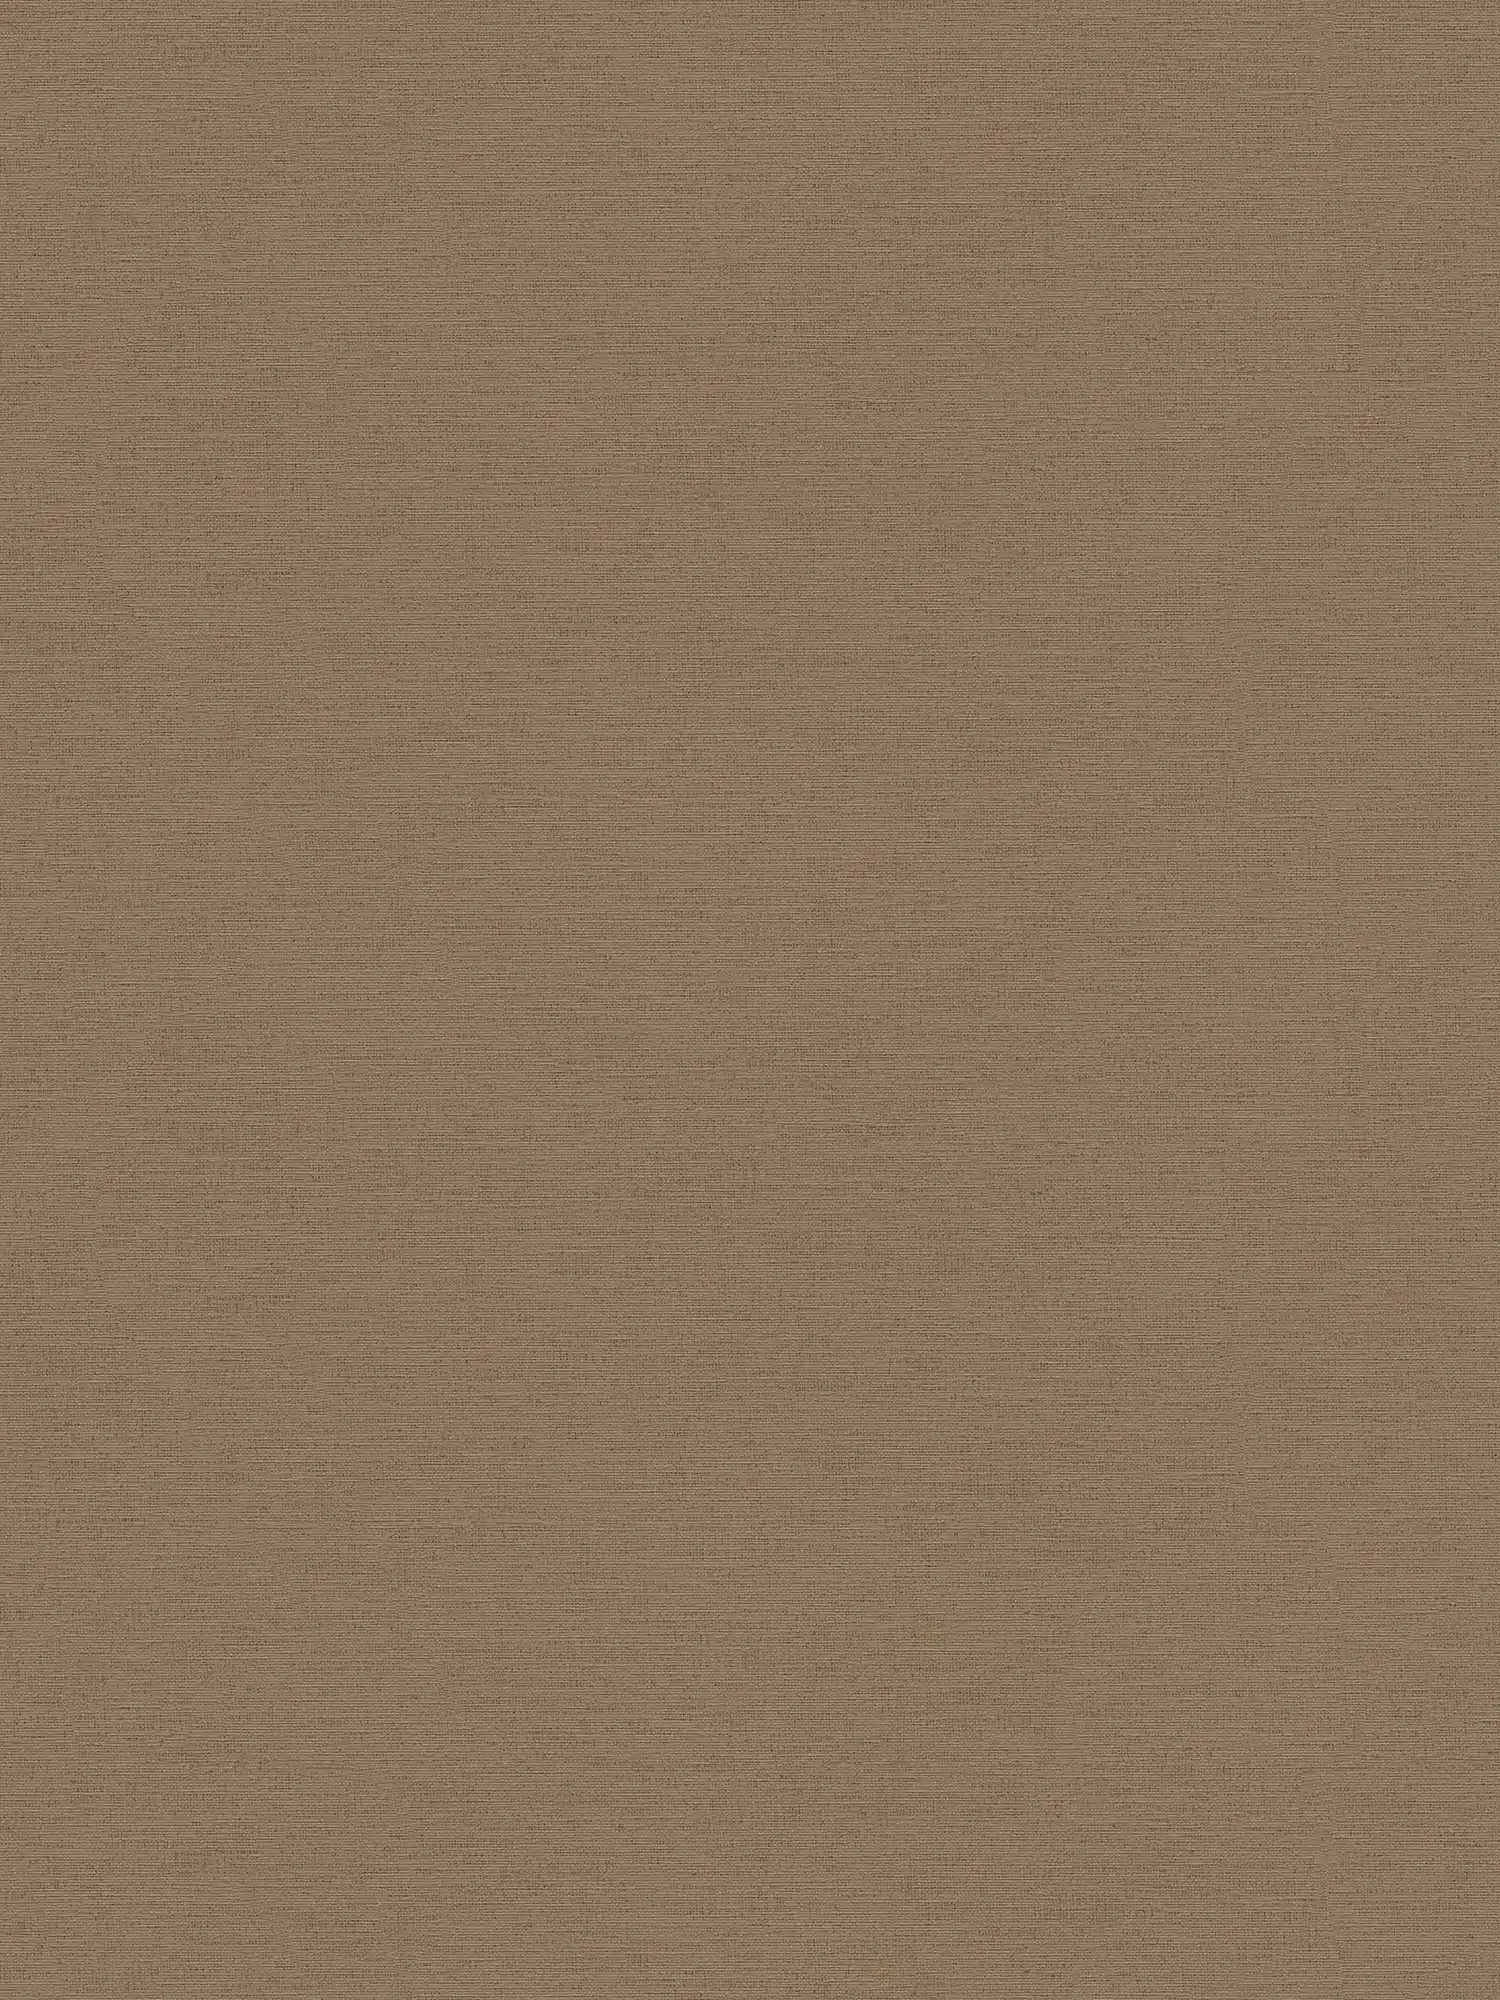 Papier peint marron aspect lin & structure gaufrée look textile
